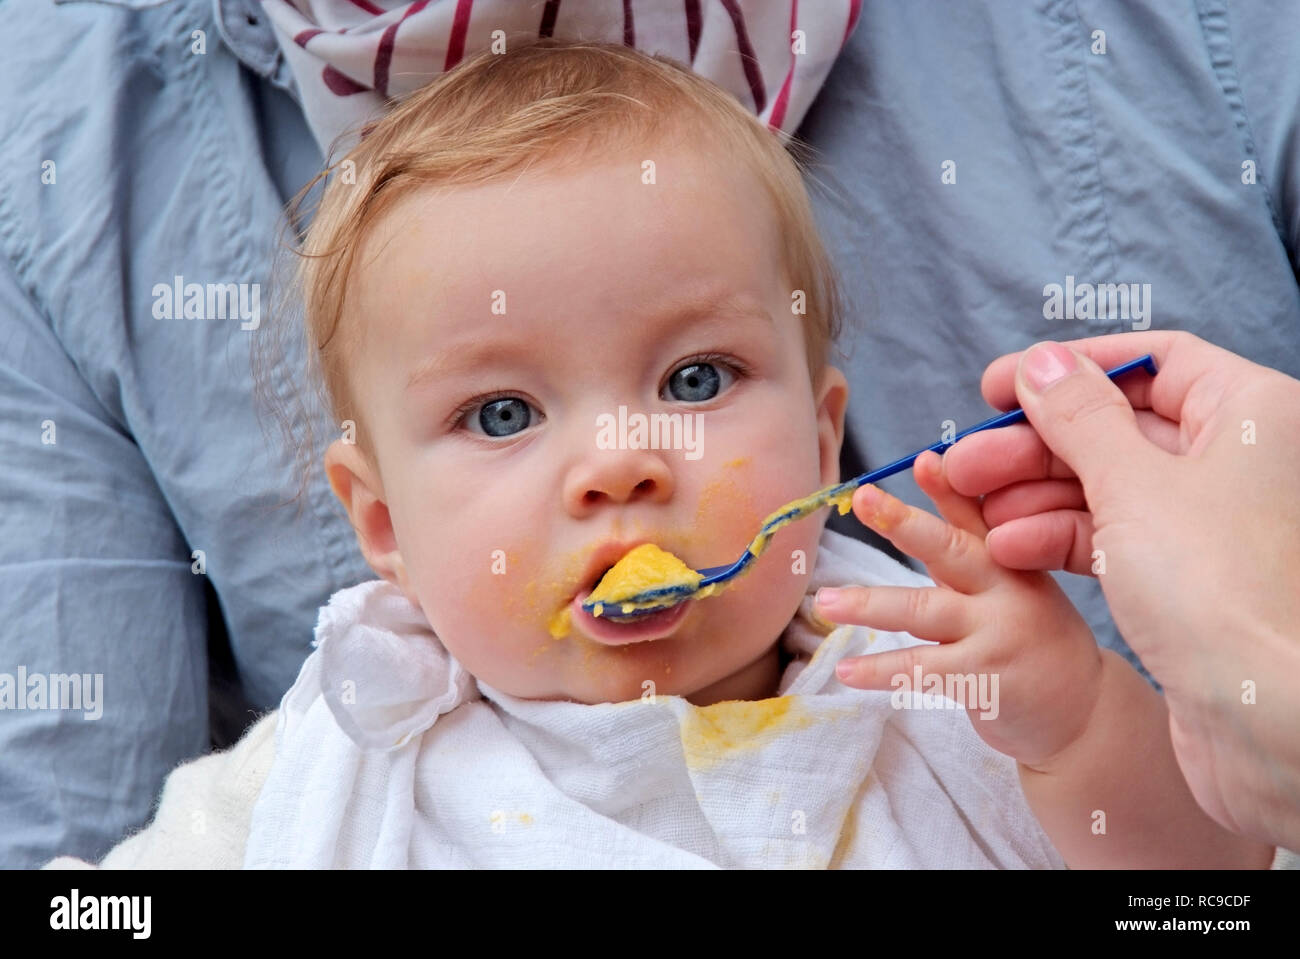 Eltern füttern ihr Baby mit Brei | parents feeding their baby wit pap Stock Photo